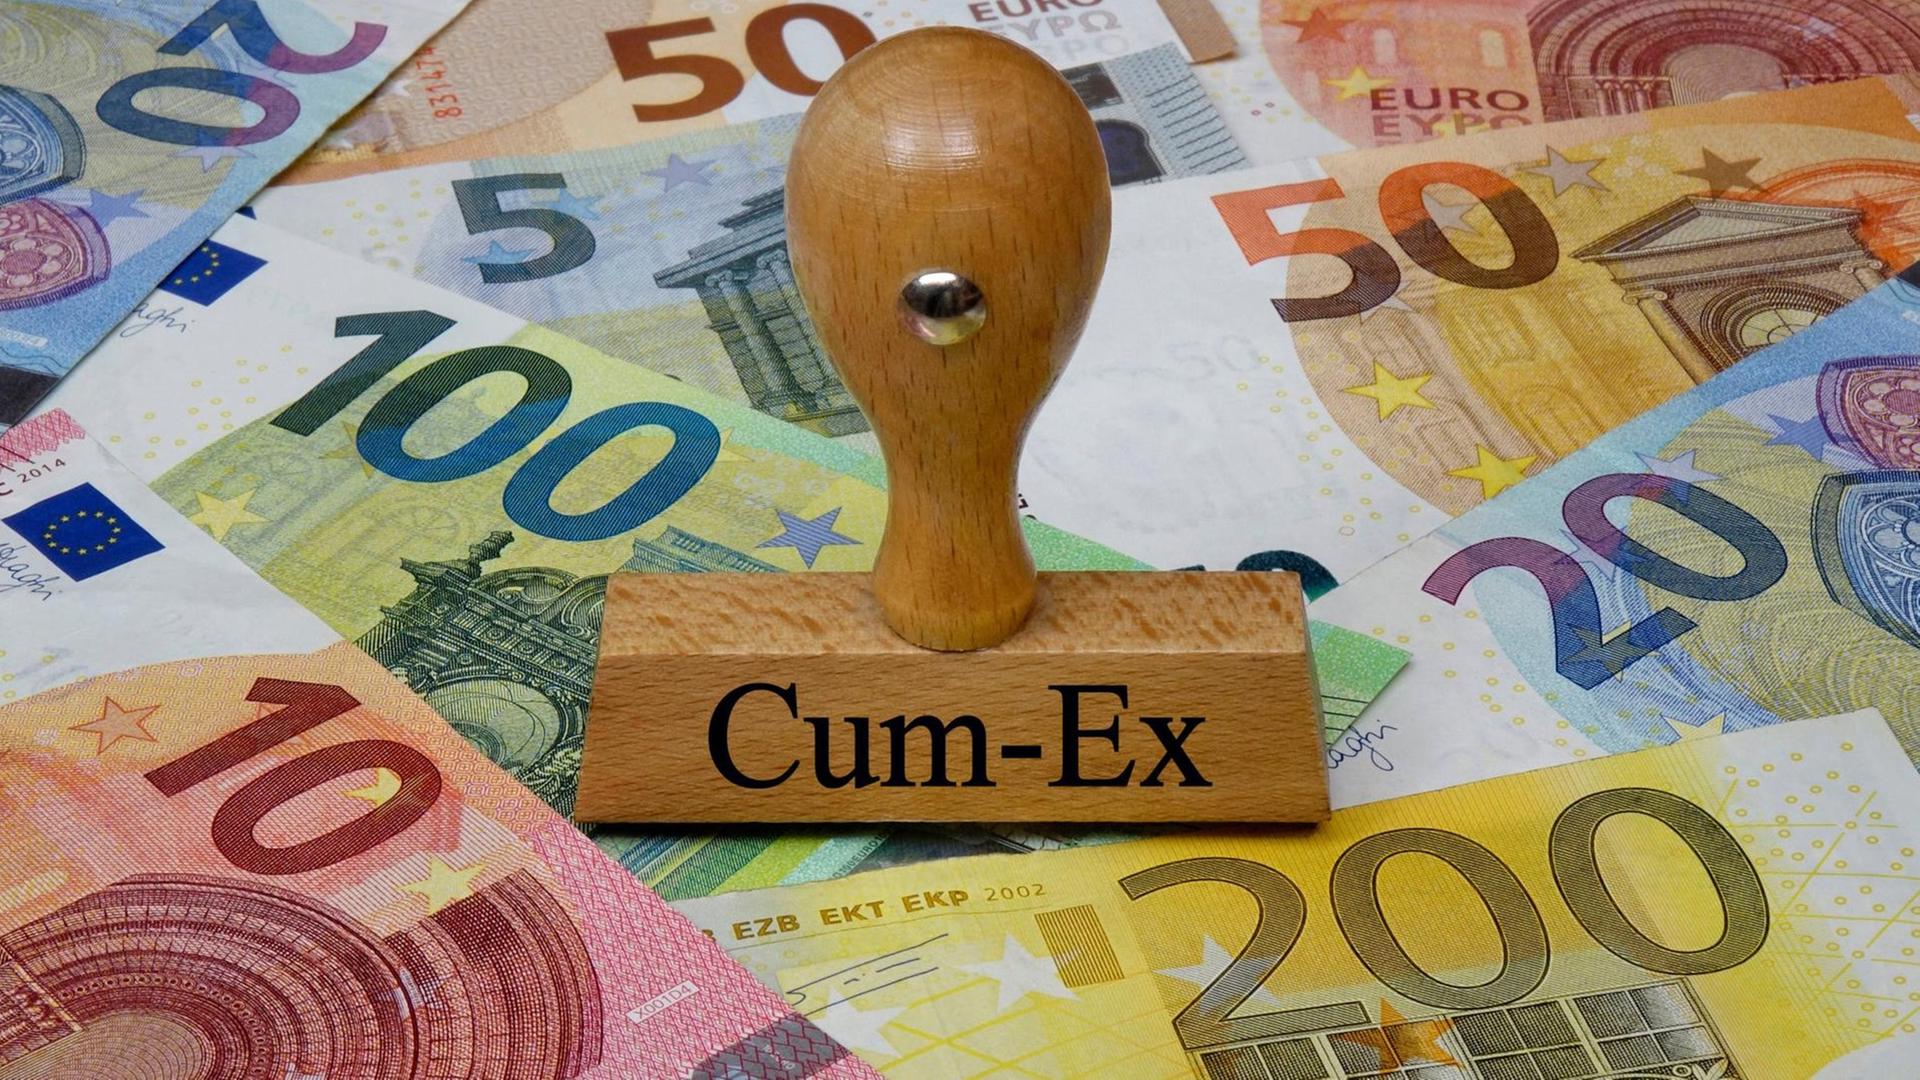 Stempel Cum-Ex, dahinter sind mehrere Euro-Geldscheine zu sehen.